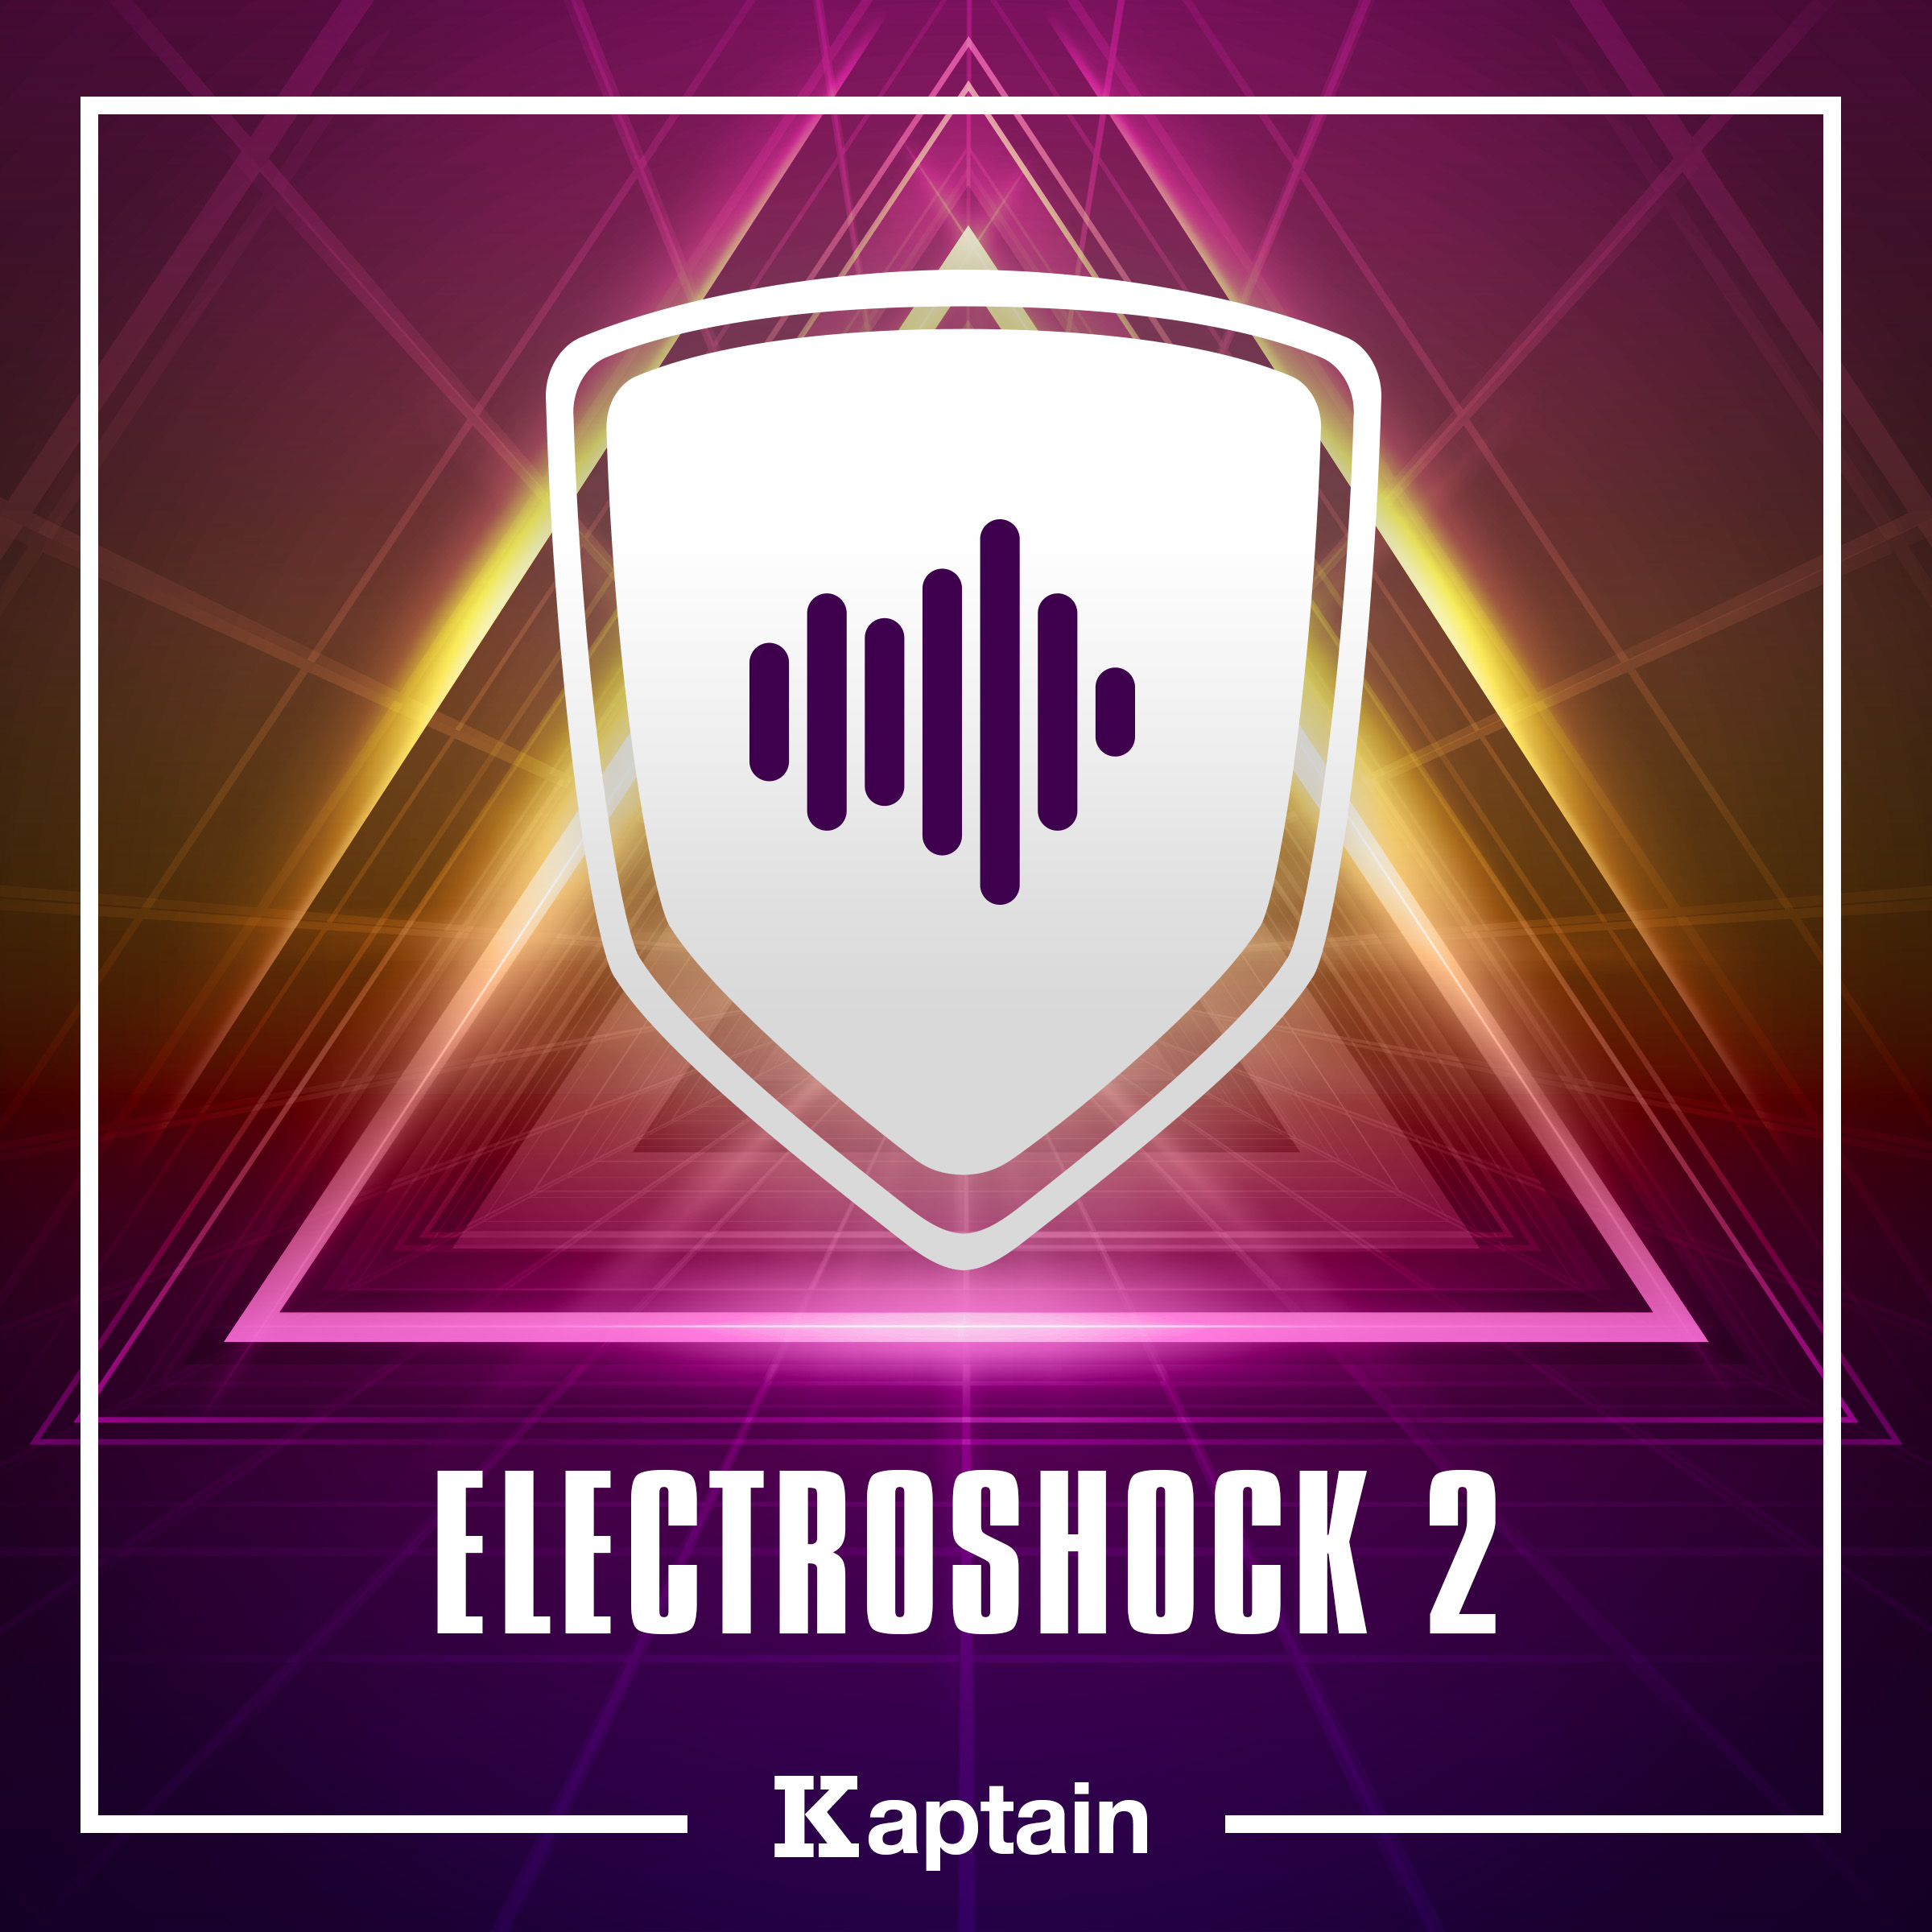 Electroshock 2